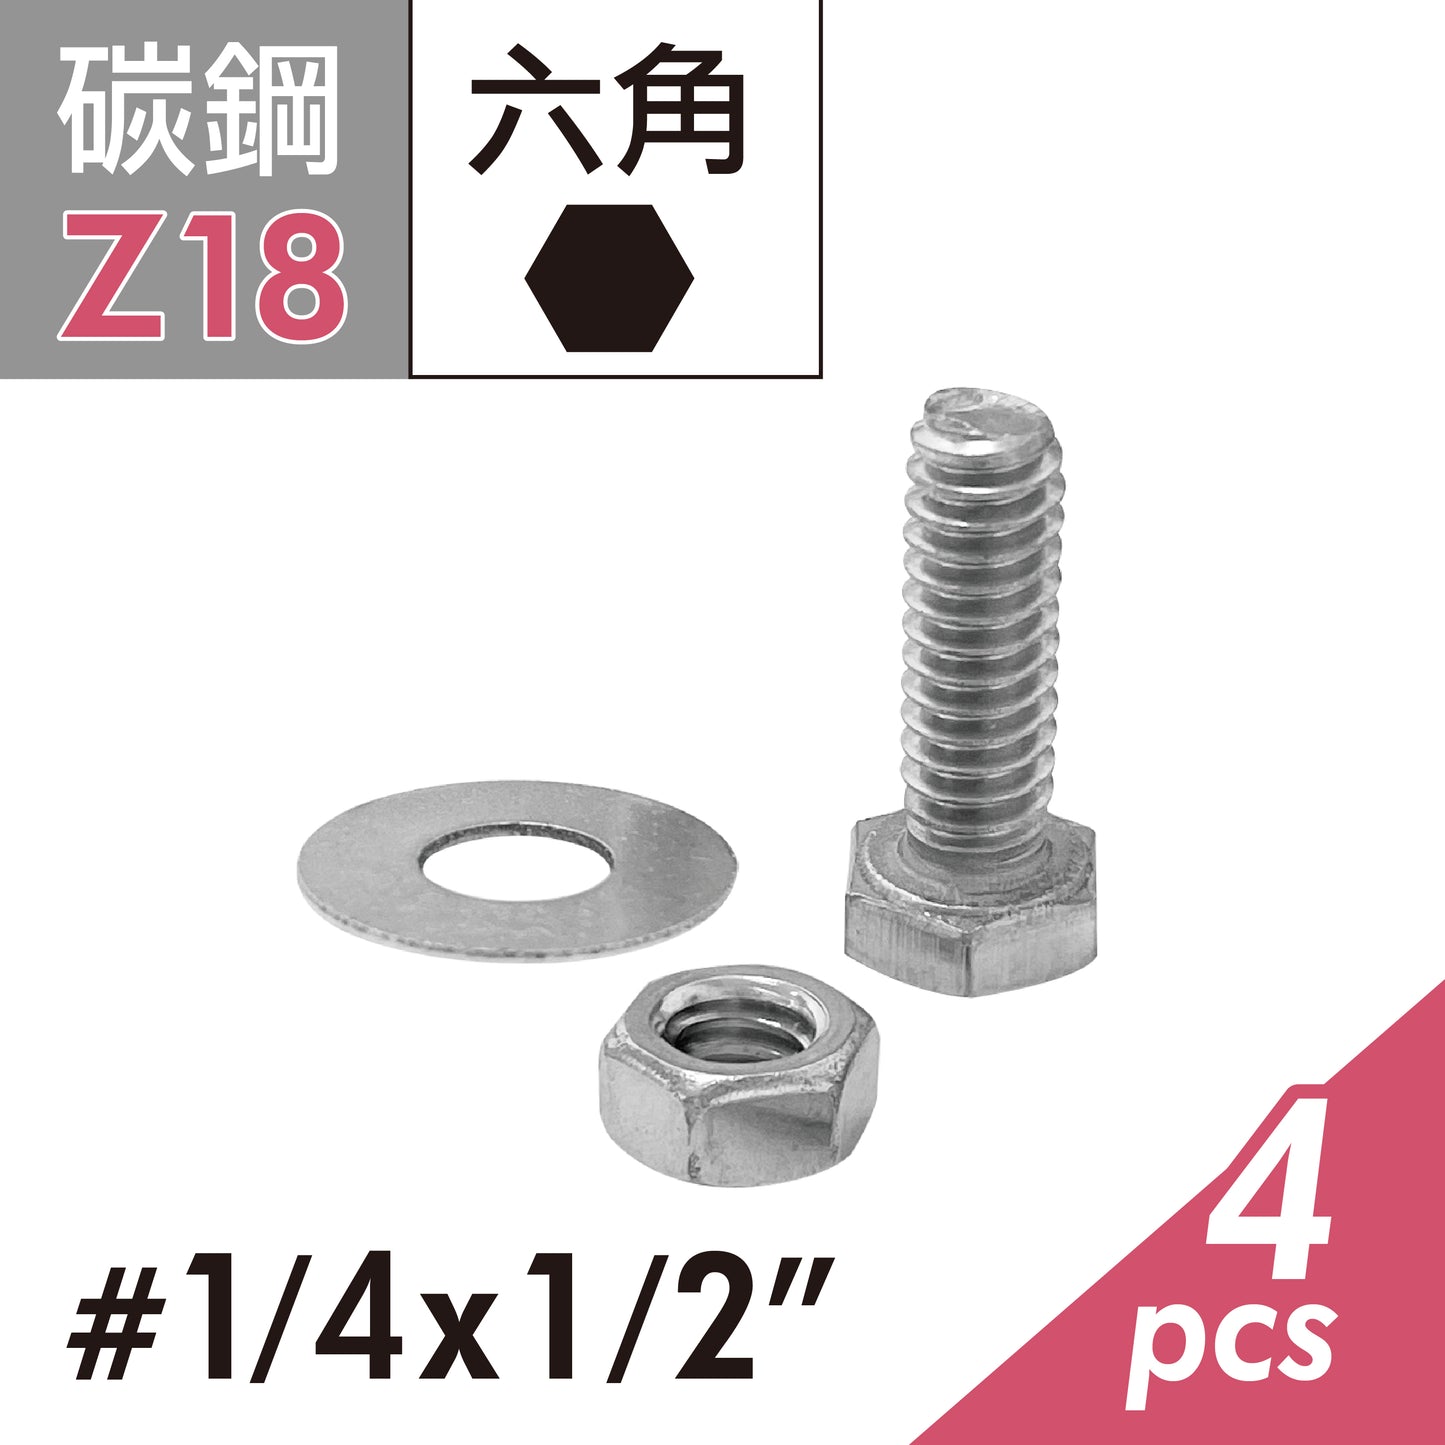 六角頭機械牙螺絲螺帽組 外六角頭螺絲+螺帽+華司組 固定螺栓 台灣製造 (E02D-Z18)